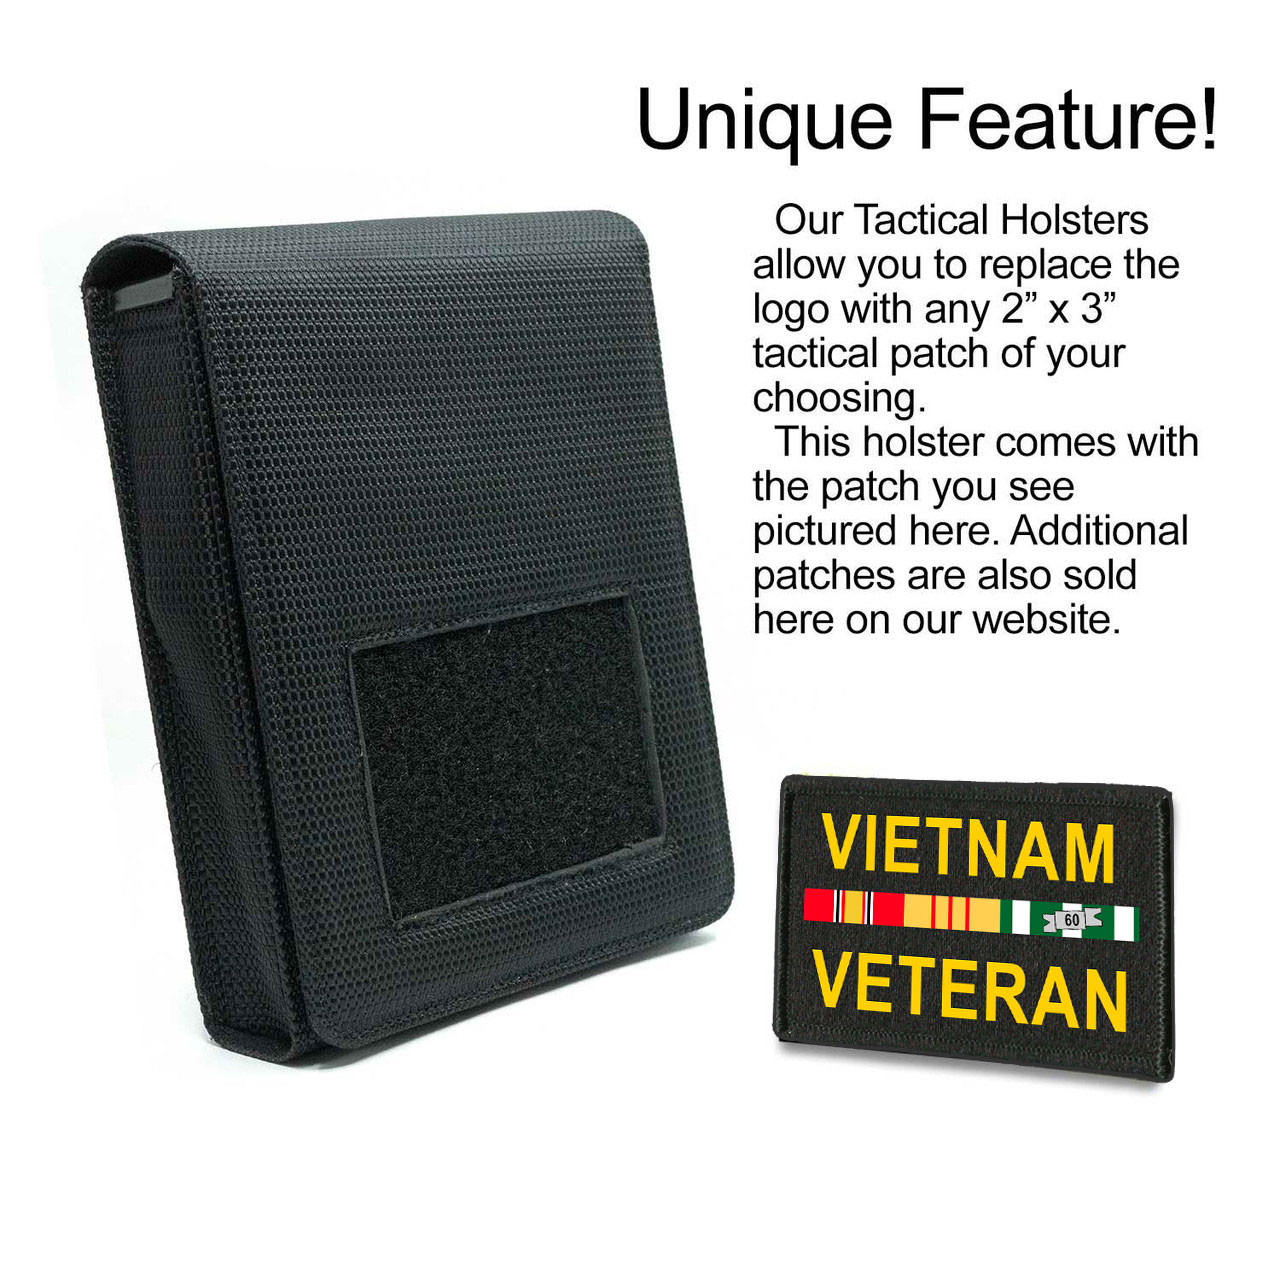 Vietnam Veteran Holster for the Glock 22